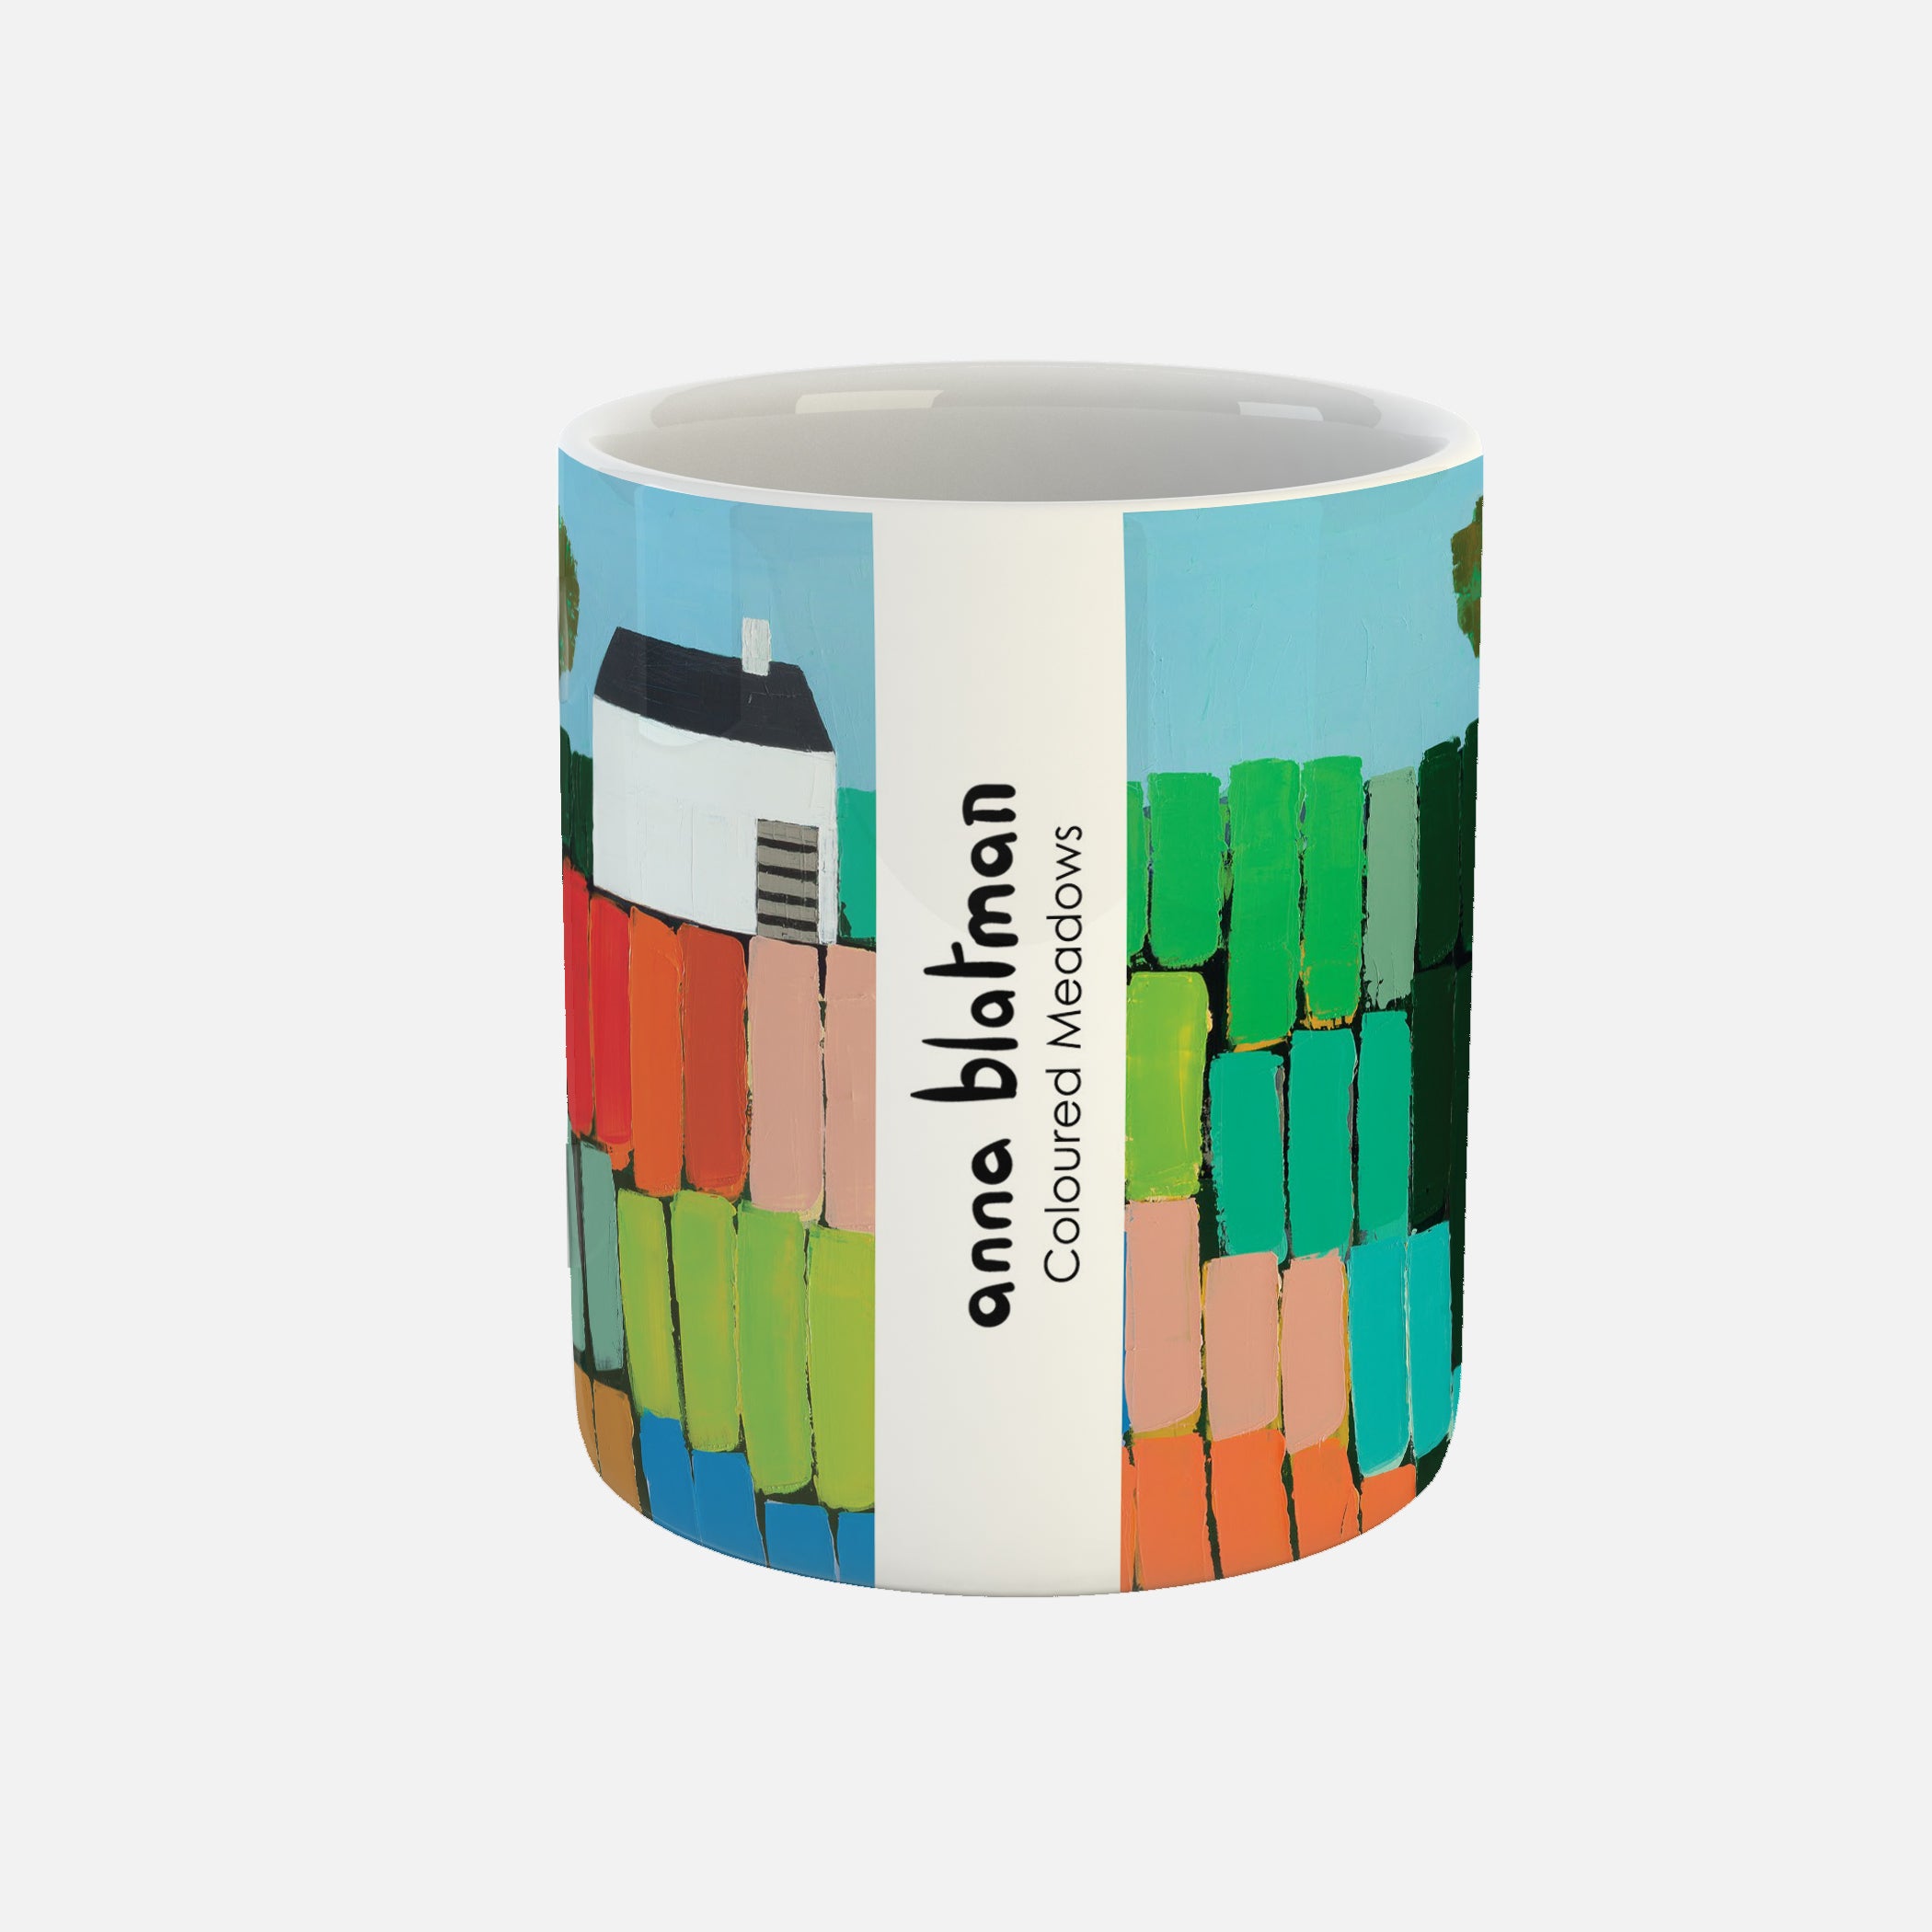 Coloured Meadows - Ceramic Mug